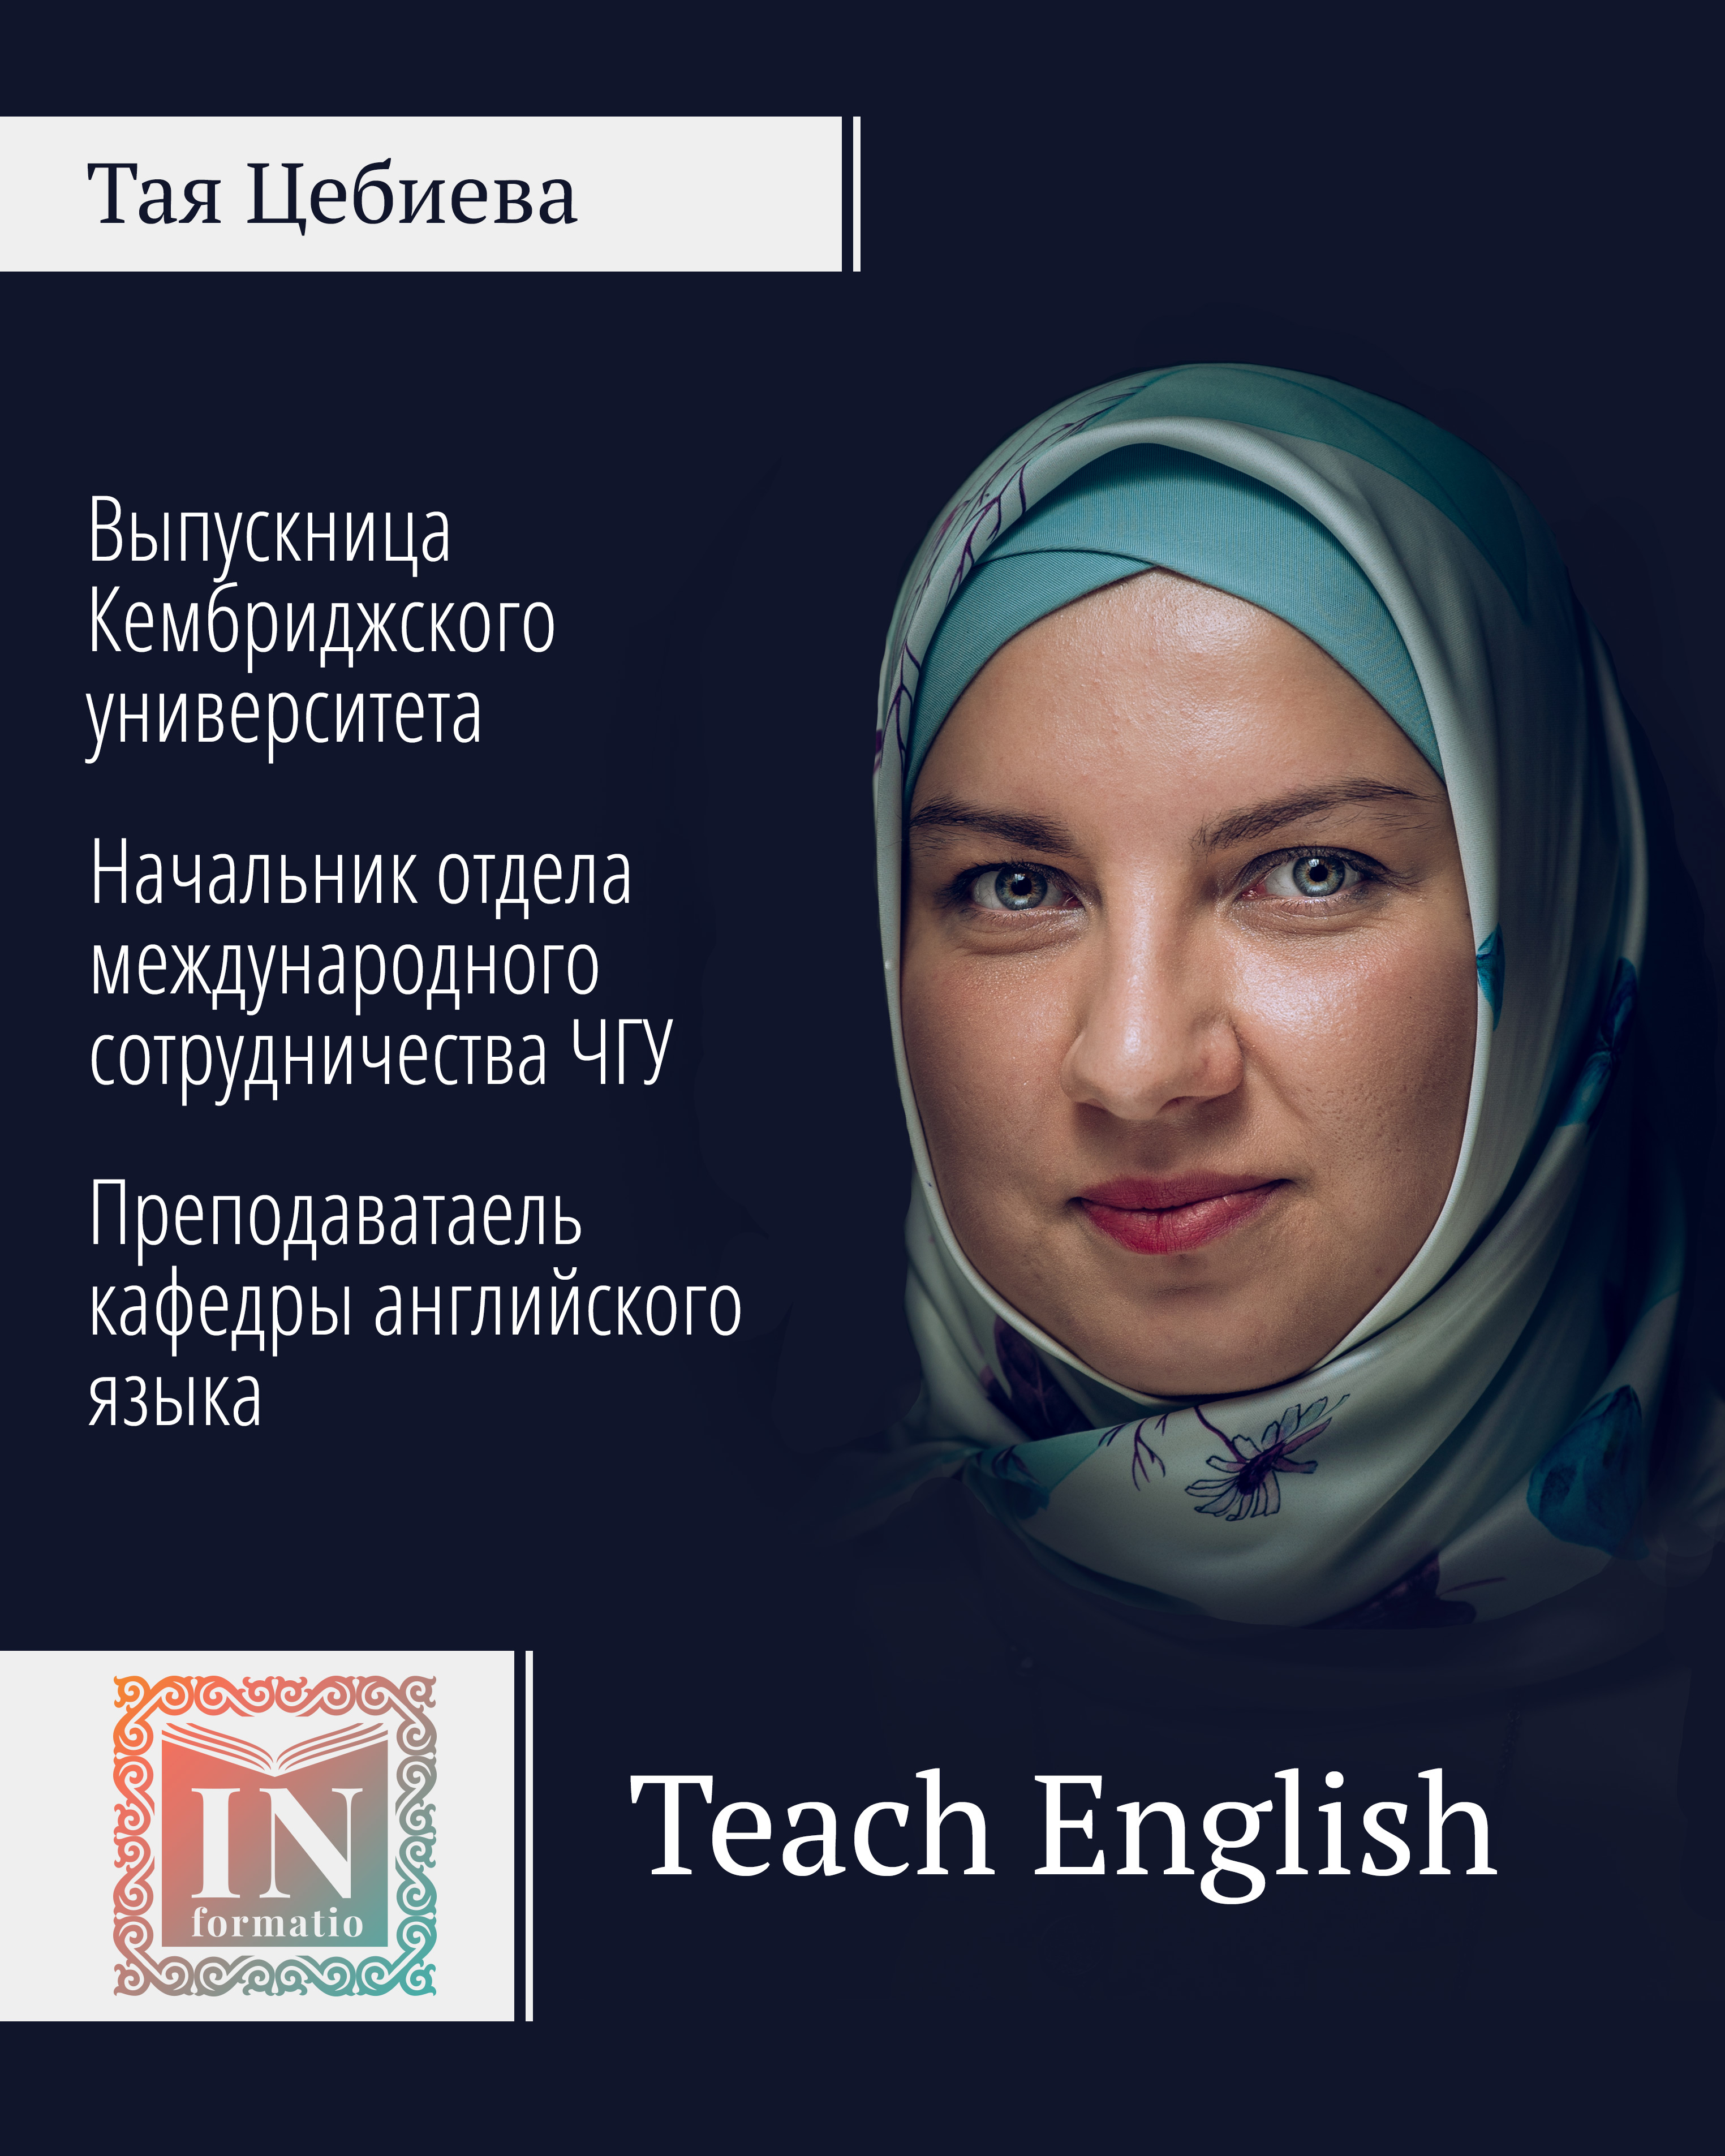 Курсы повышения квалификации для учителей английского языка в Грозном